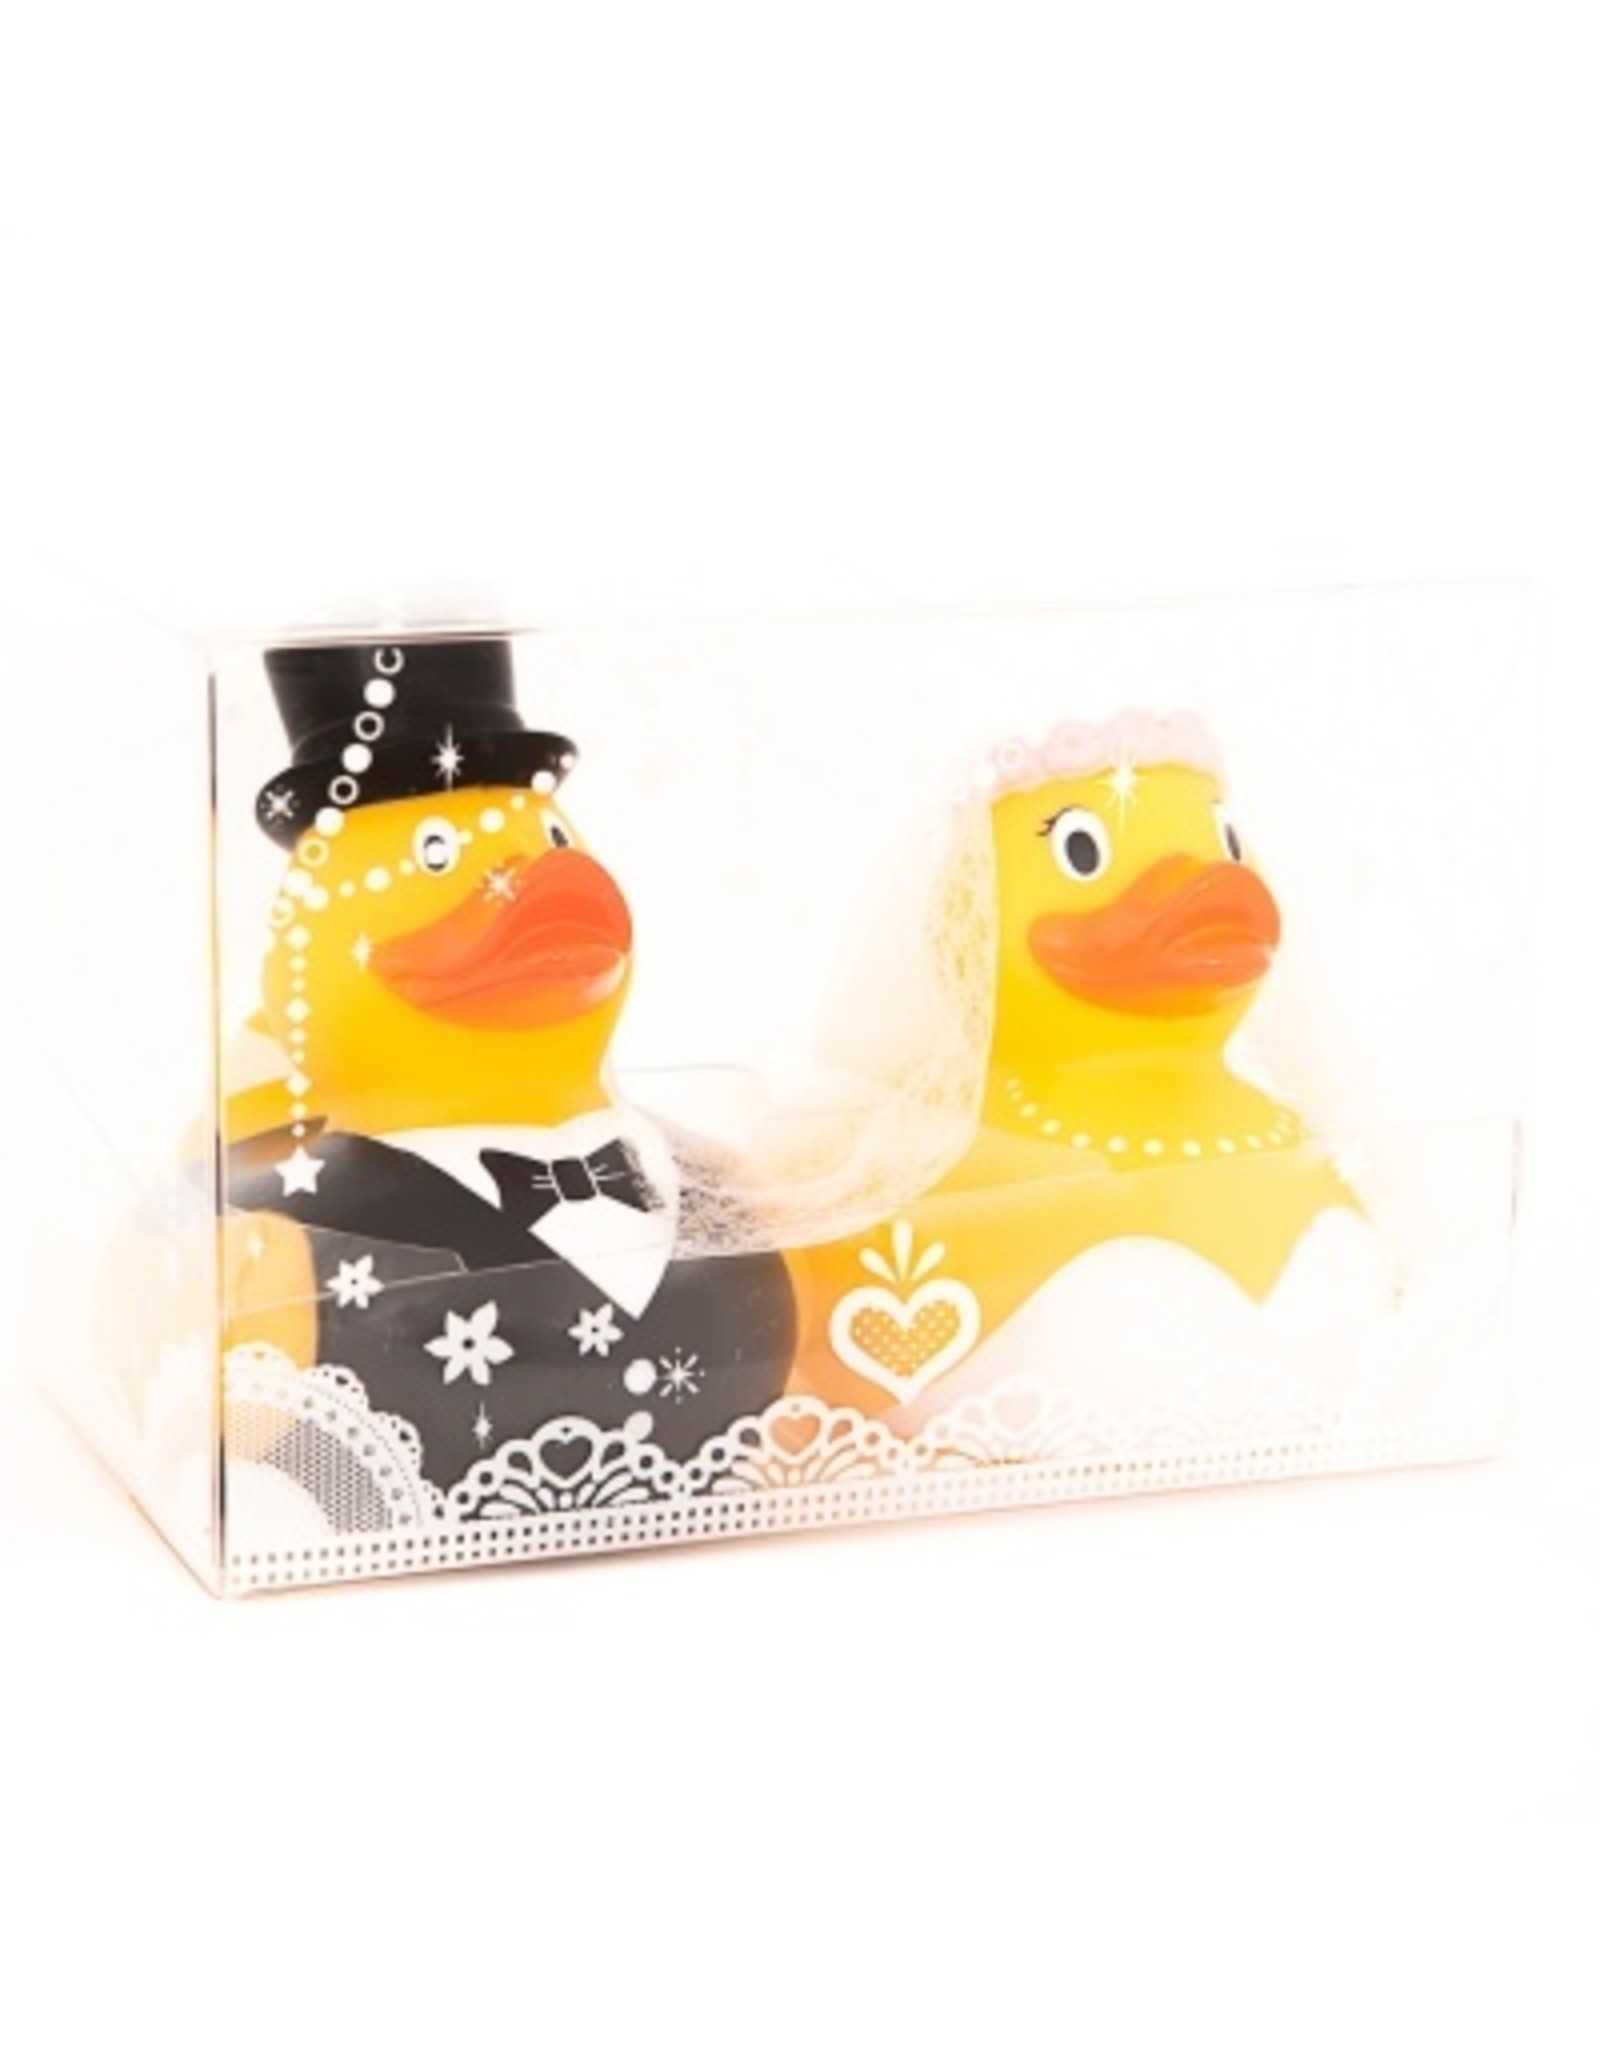 Just Ducks Own Bride & Groom Rubber Duck Set